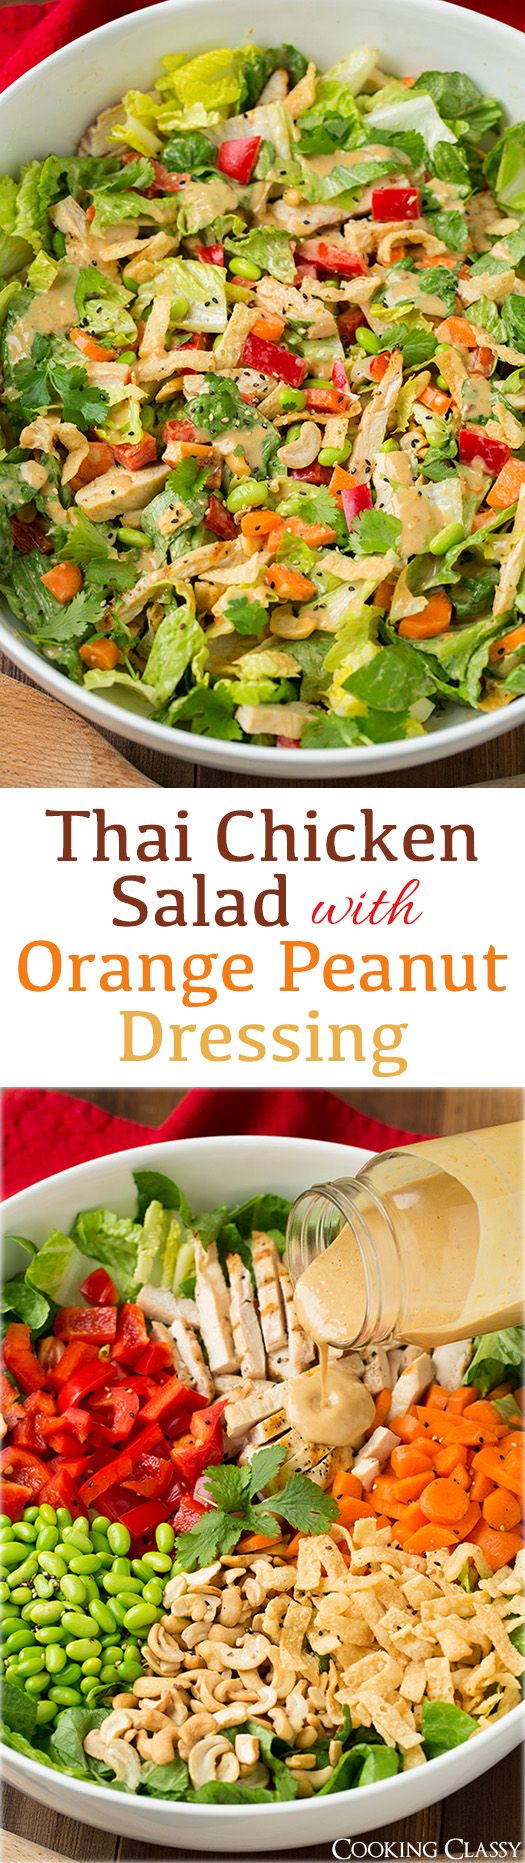 Thai Chicken Salad with Orange Peanut Dressing